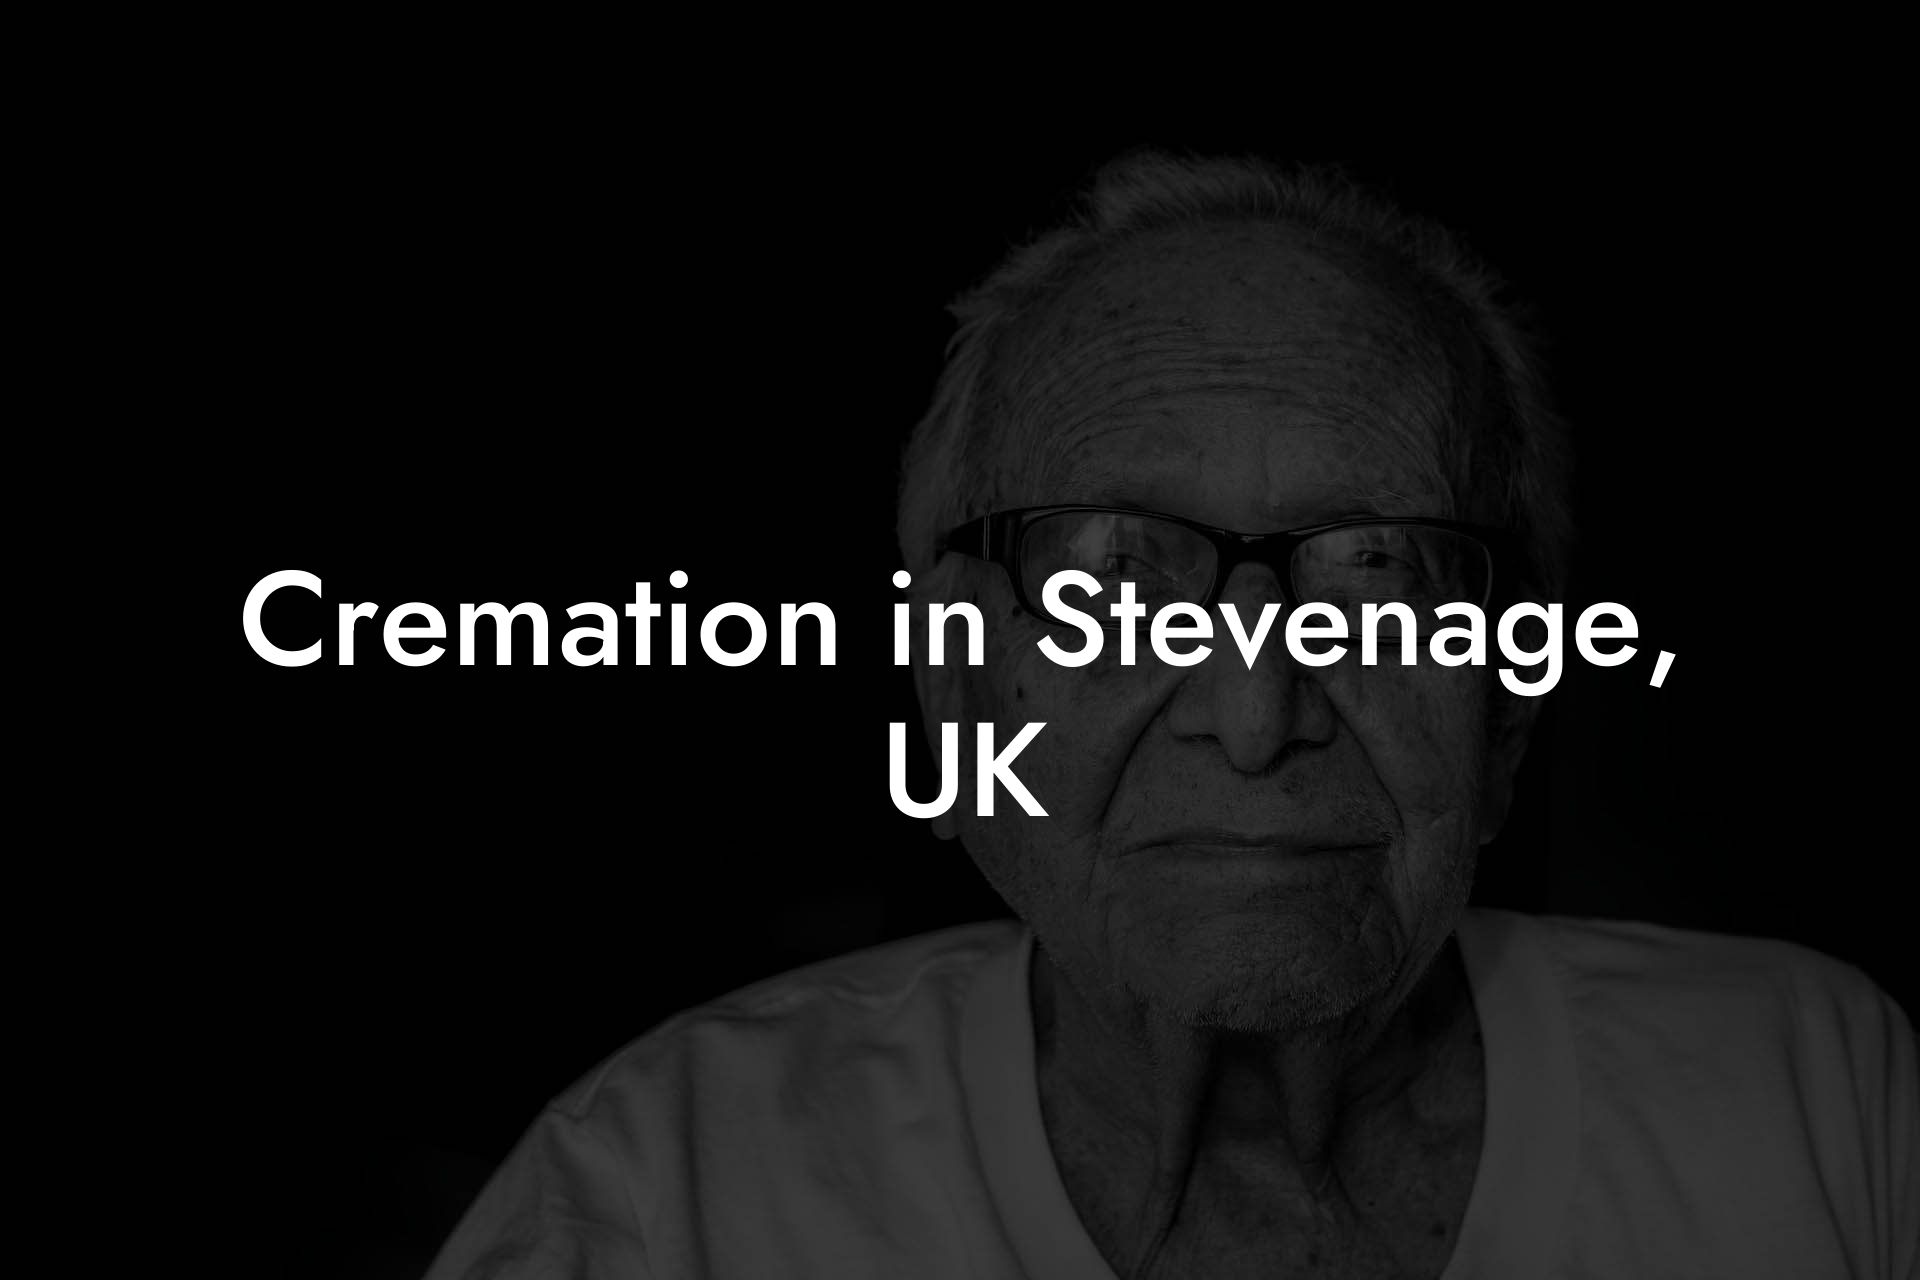 Cremation in Stevenage, UK